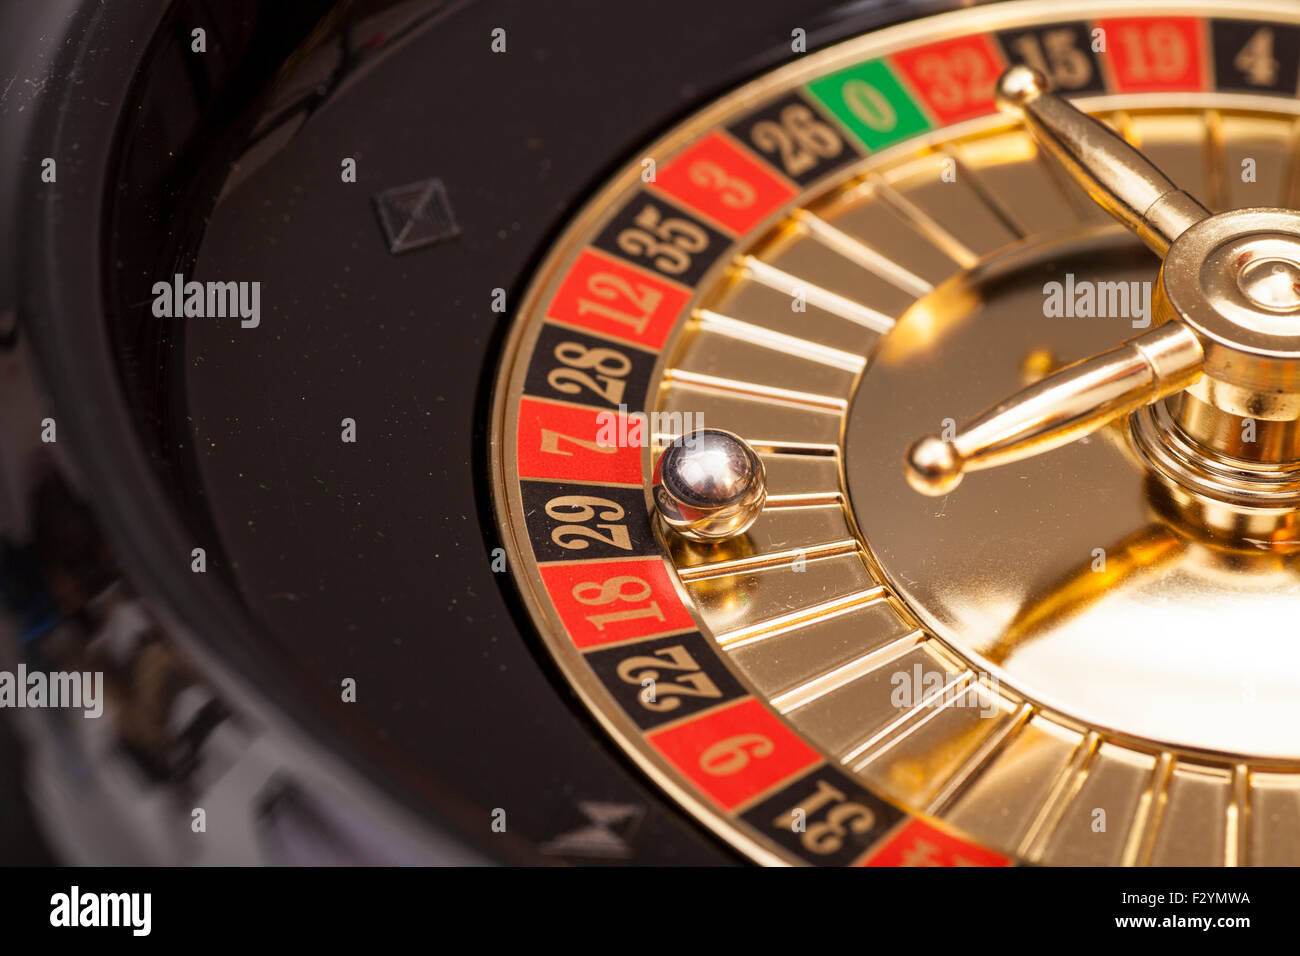 Roulette in casino Stock Photo